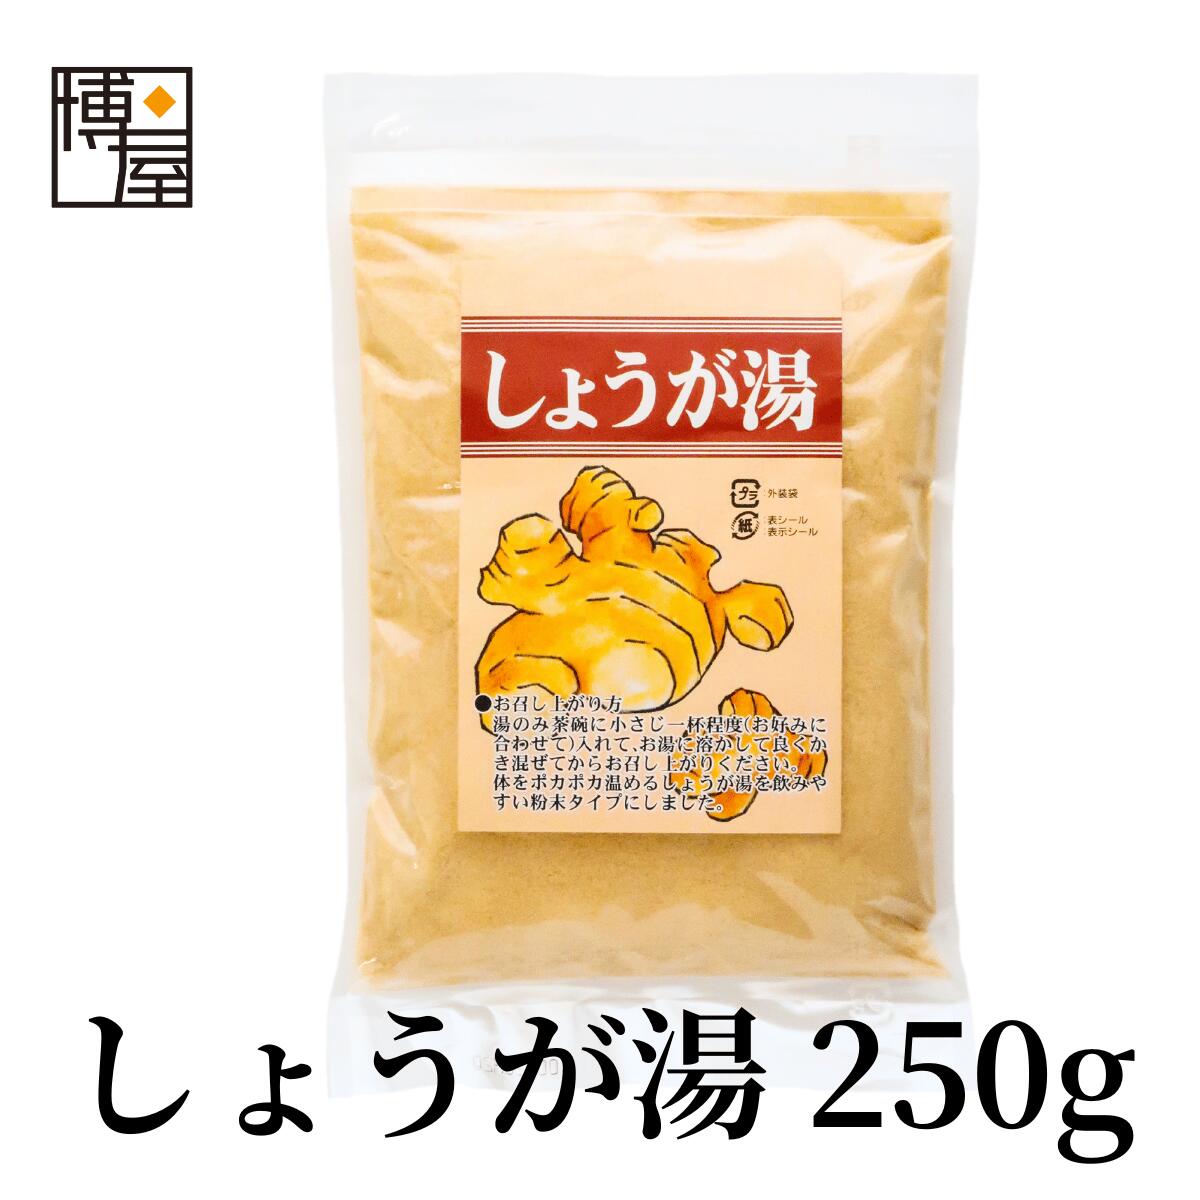 生薑湯 270g x 1包 生薑湯 生薑 湯 食品 日本必買 | 日本樂天熱銷